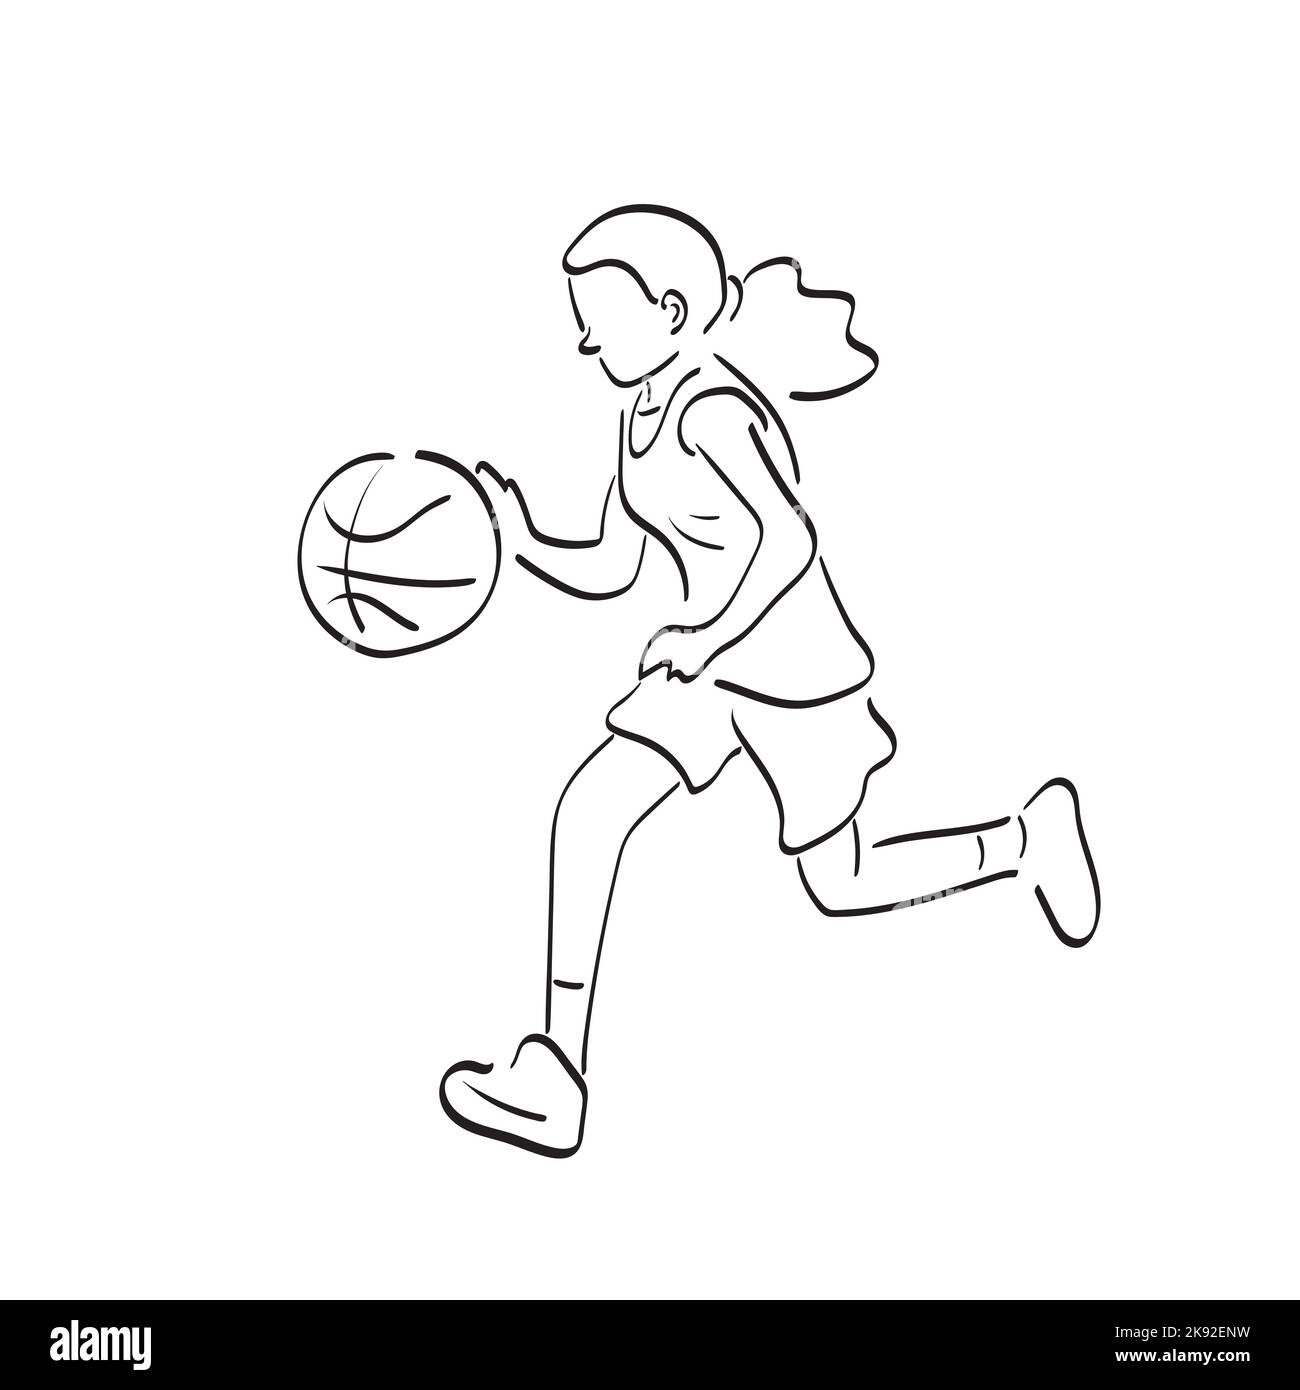 ragazzino del fumetto che gioca a basket 7098271 Arte vettoriale a Vecteezy